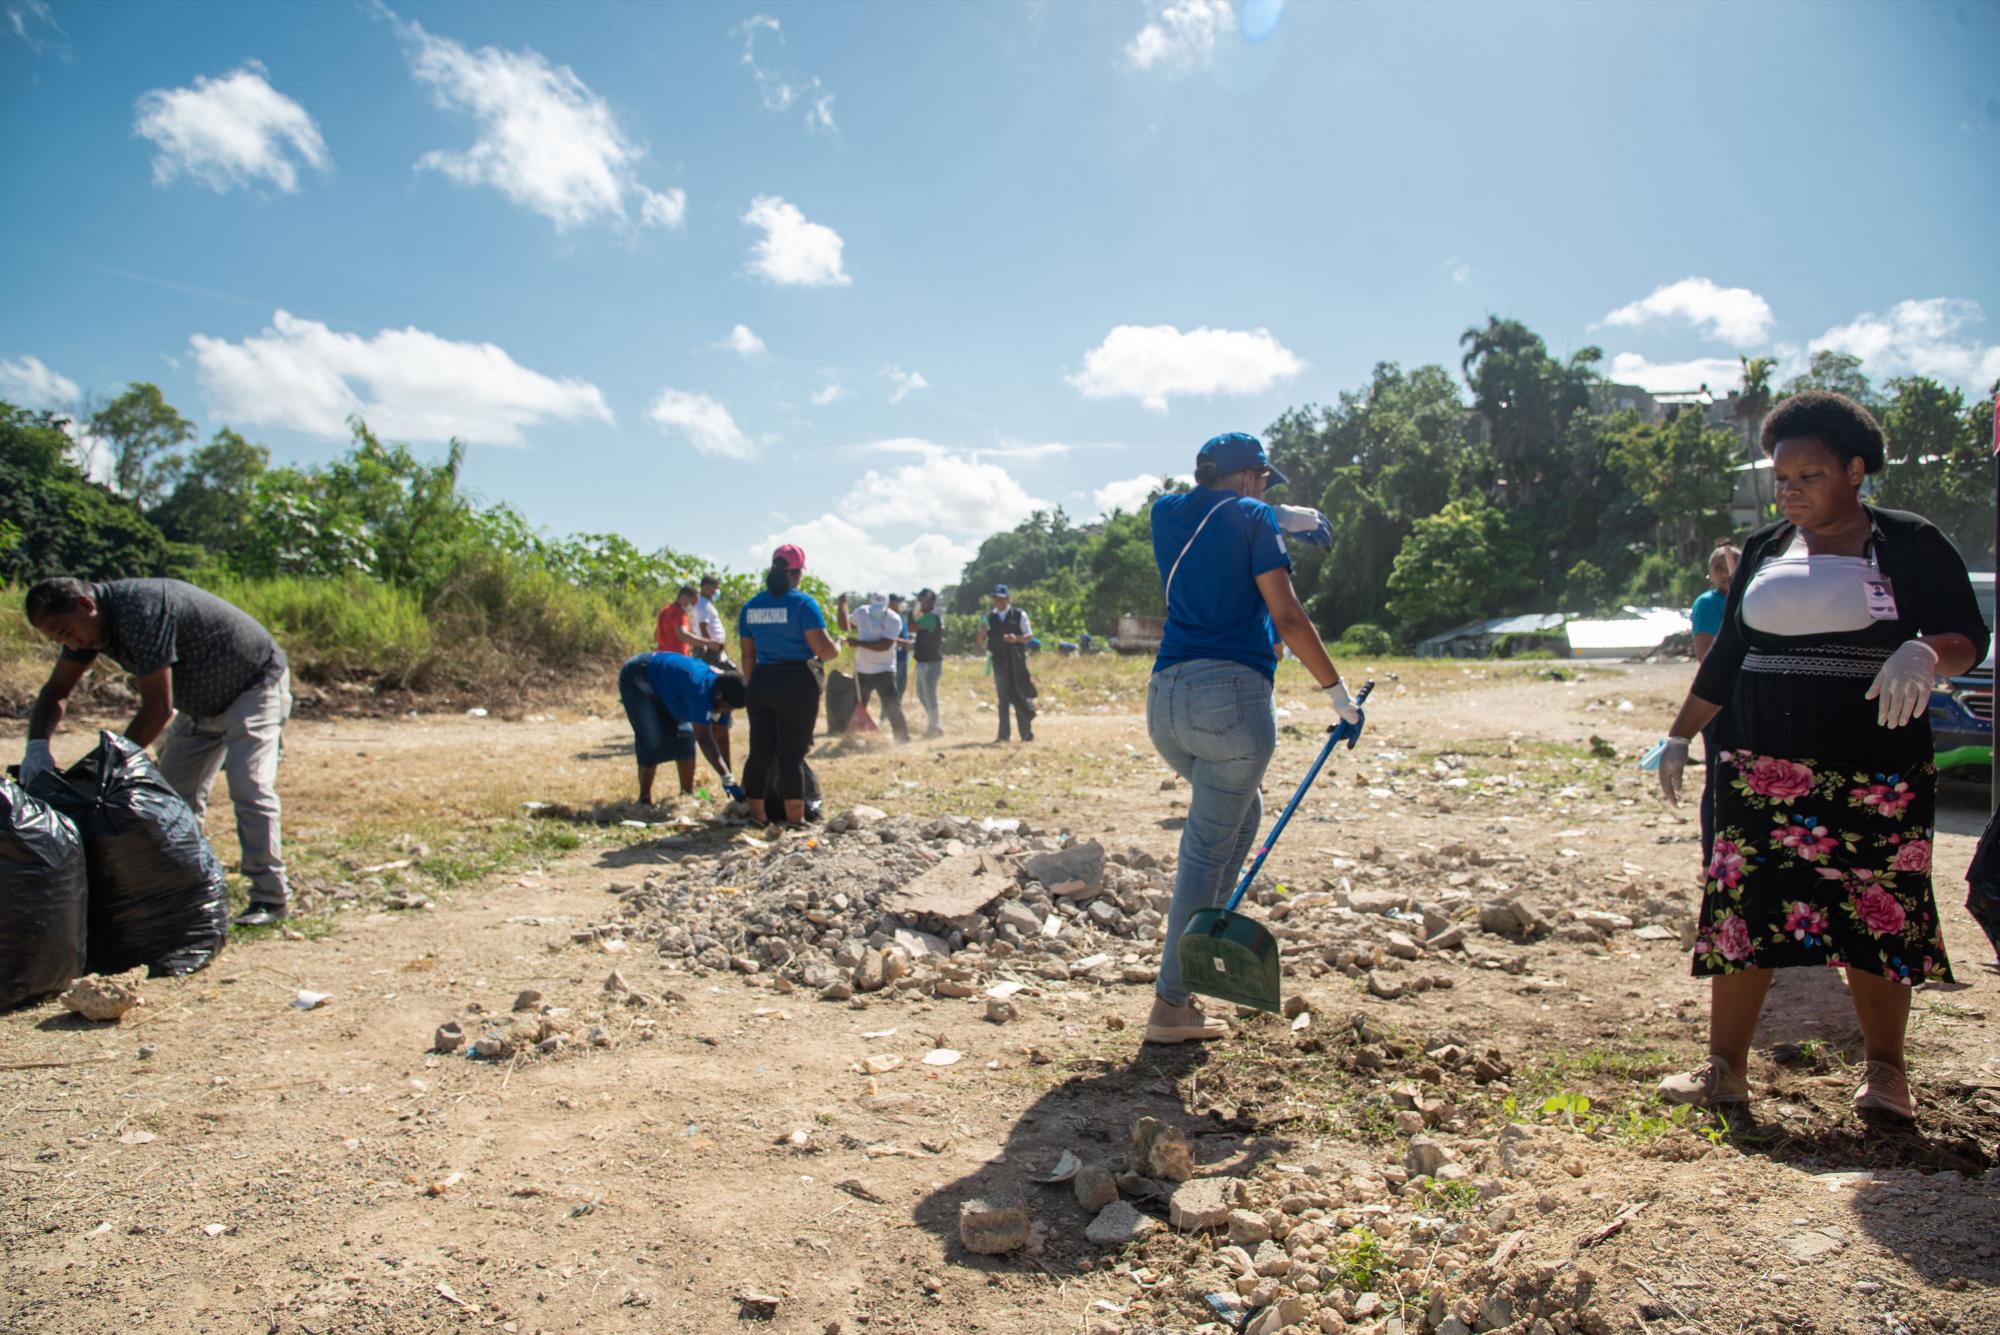 Este sábado organizaron un operativo de limpieza a orillas del río para recoger plástico, y orientar a los residentes en esa demarcación sobre la importancia de cuidar los recursos naturales. (Foto: Massiel Beco / Diario Libre)